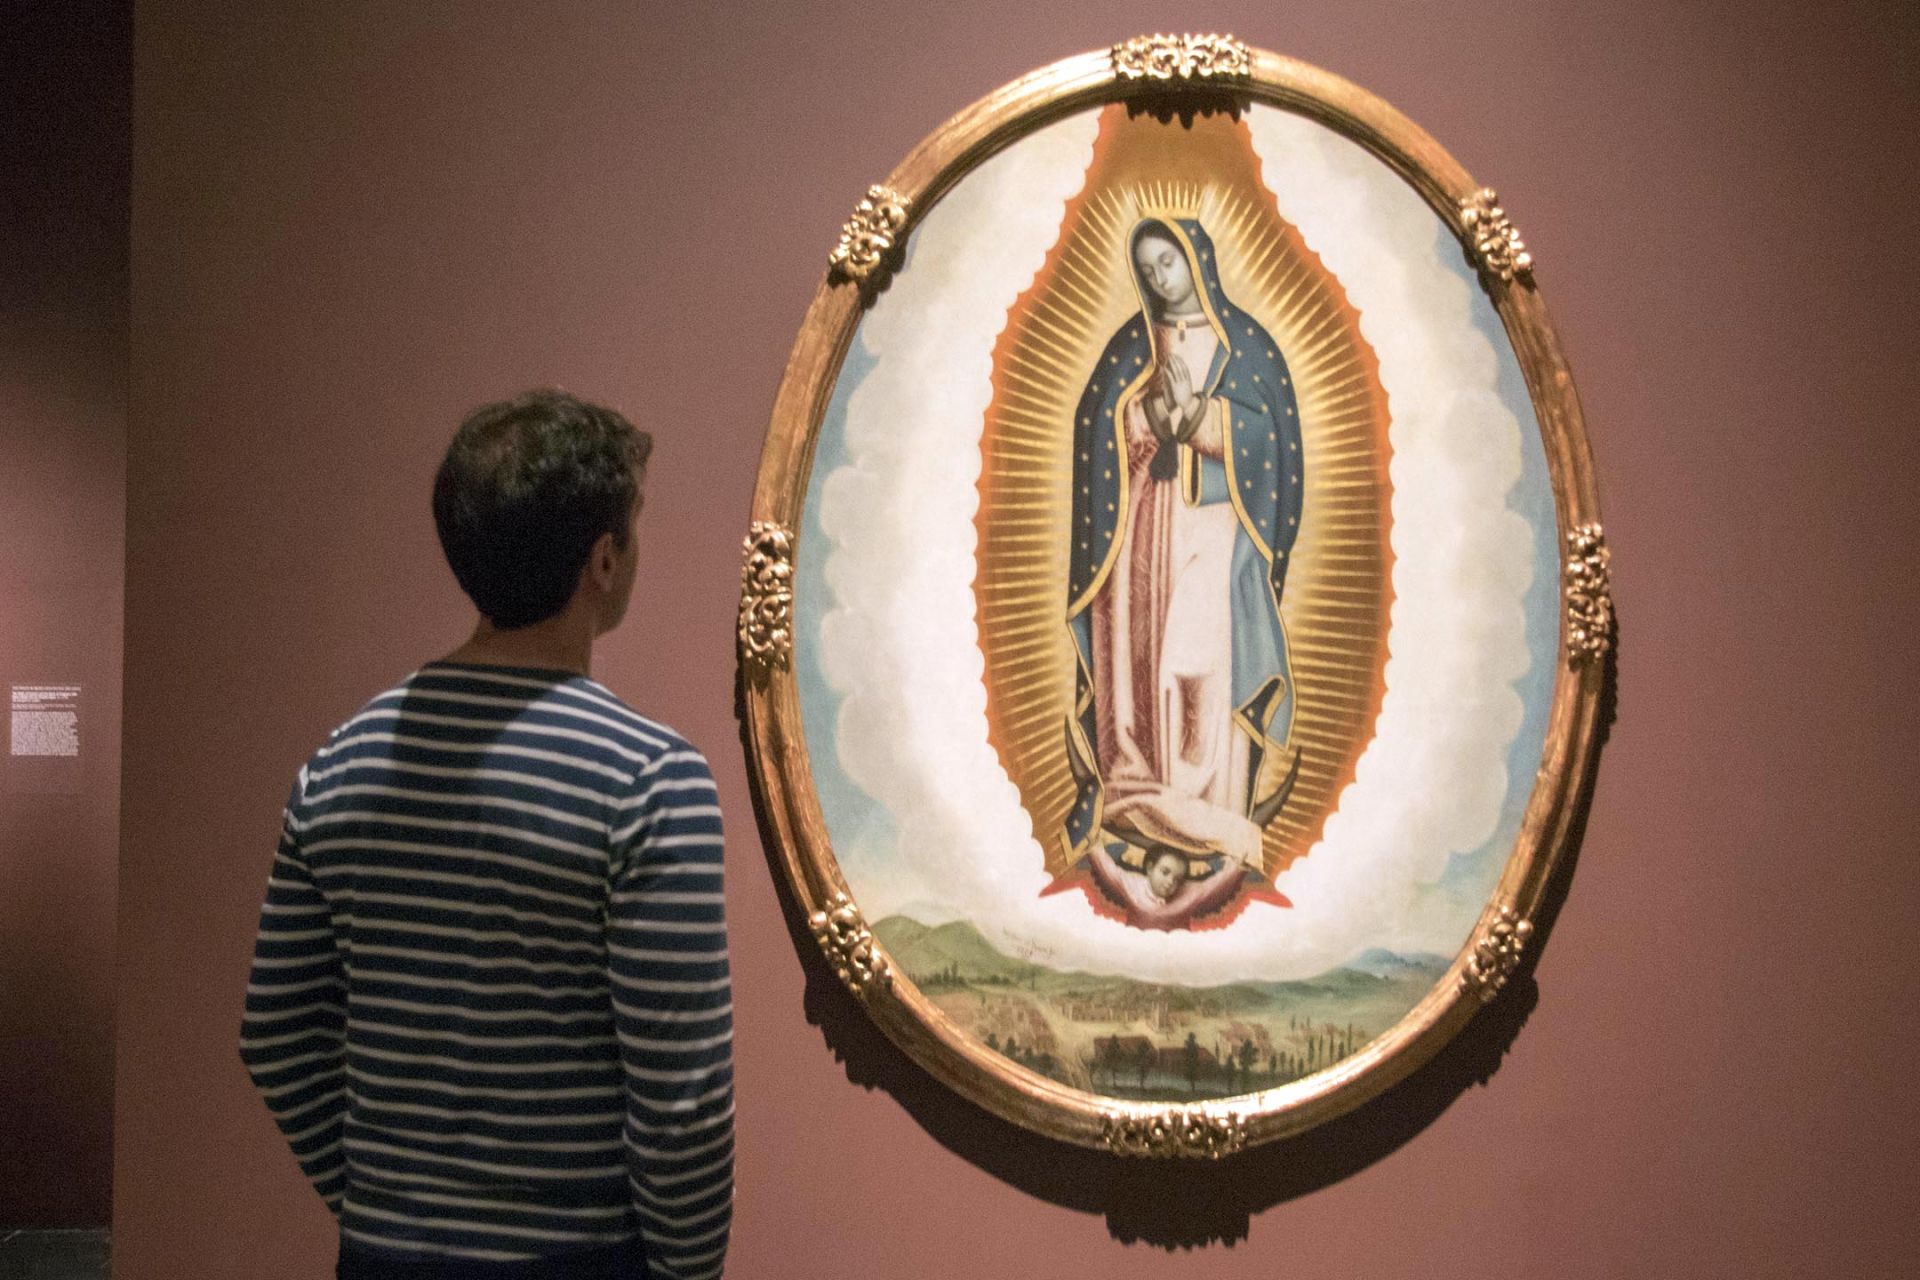 Una persona observa la obra "Virgen de Guadalupe y vista del valle de México" (1739) de José de Ibarra.